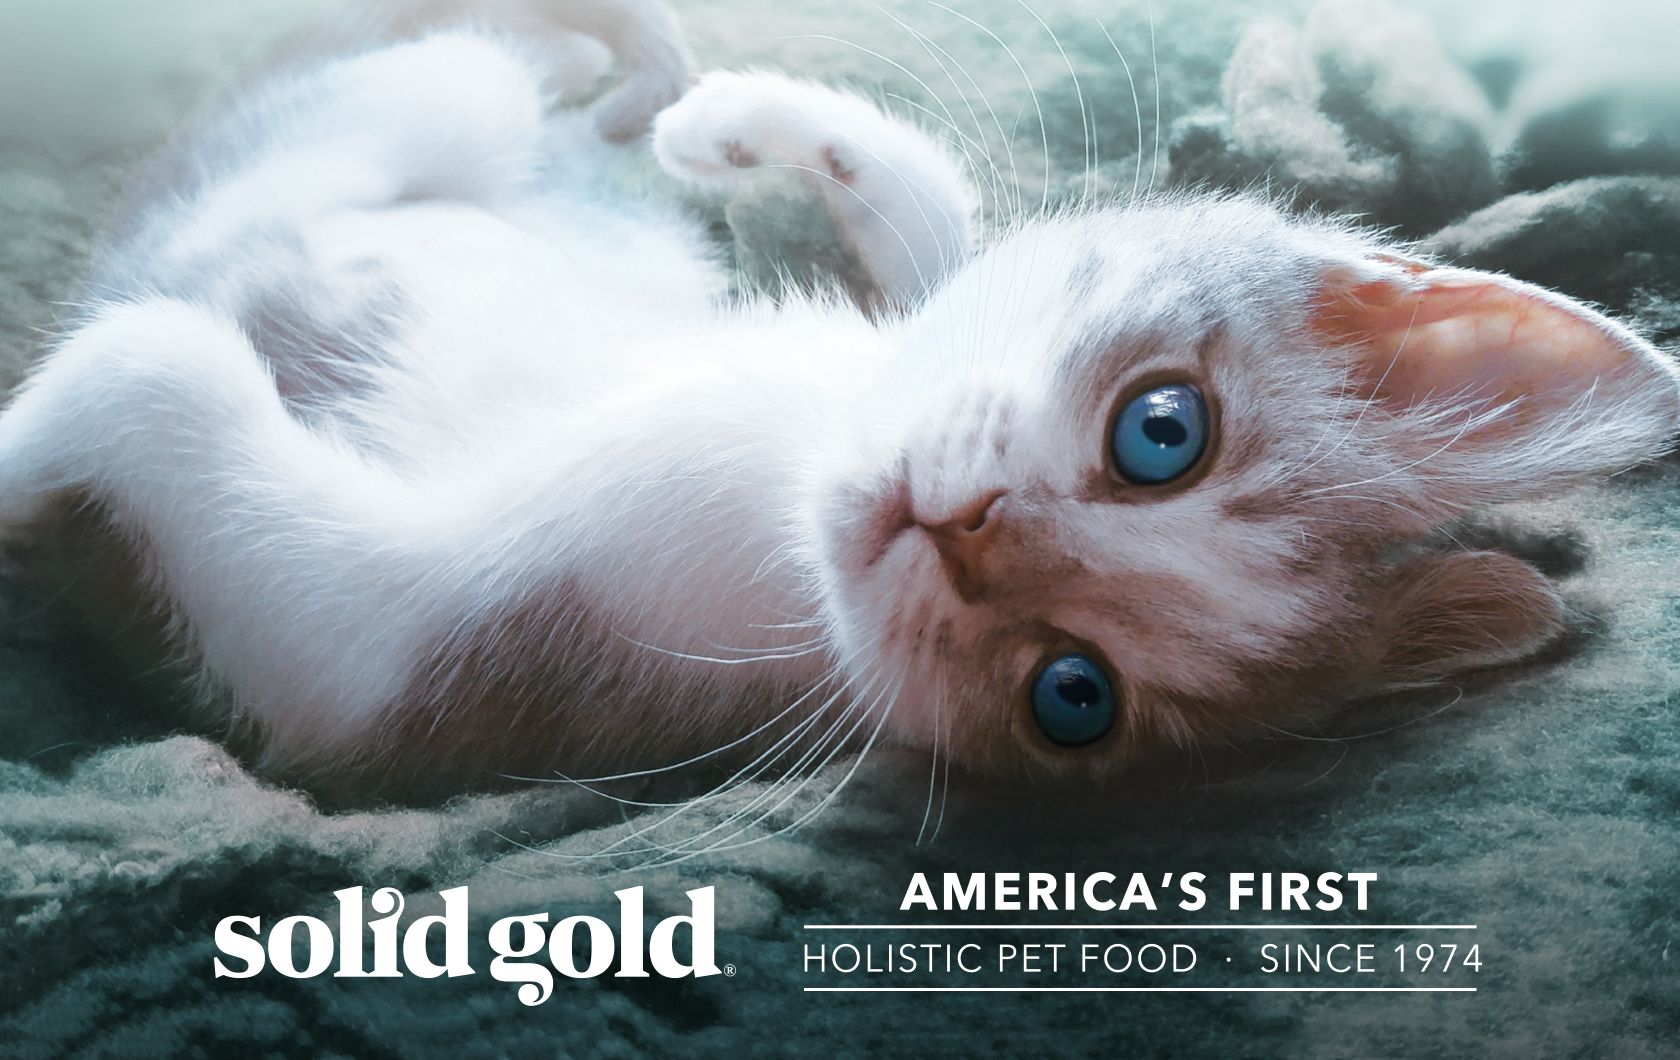 petsmart solid gold cat food